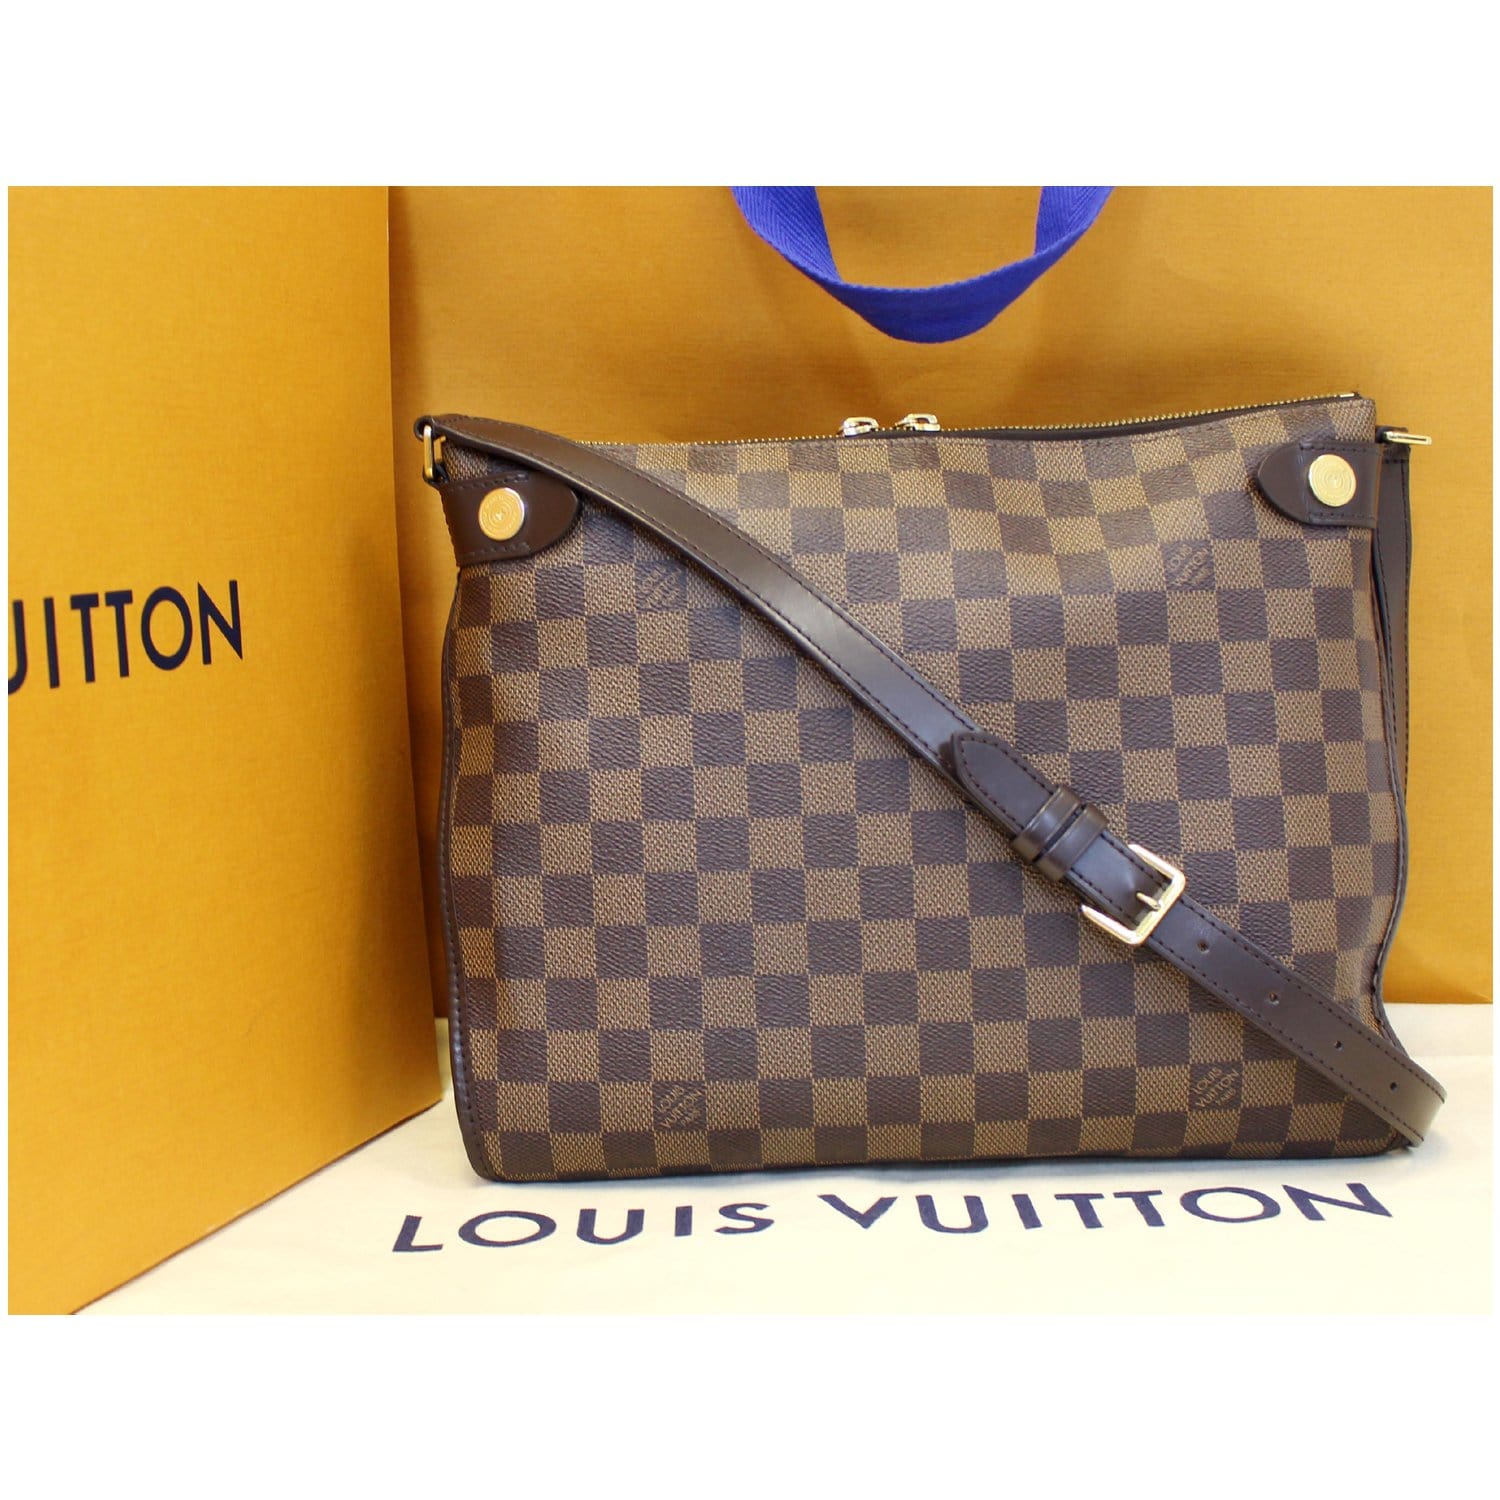 Louis Vuitton, Bags, Vintage Luxury Louis Vuitton Damier Ebene Duomo